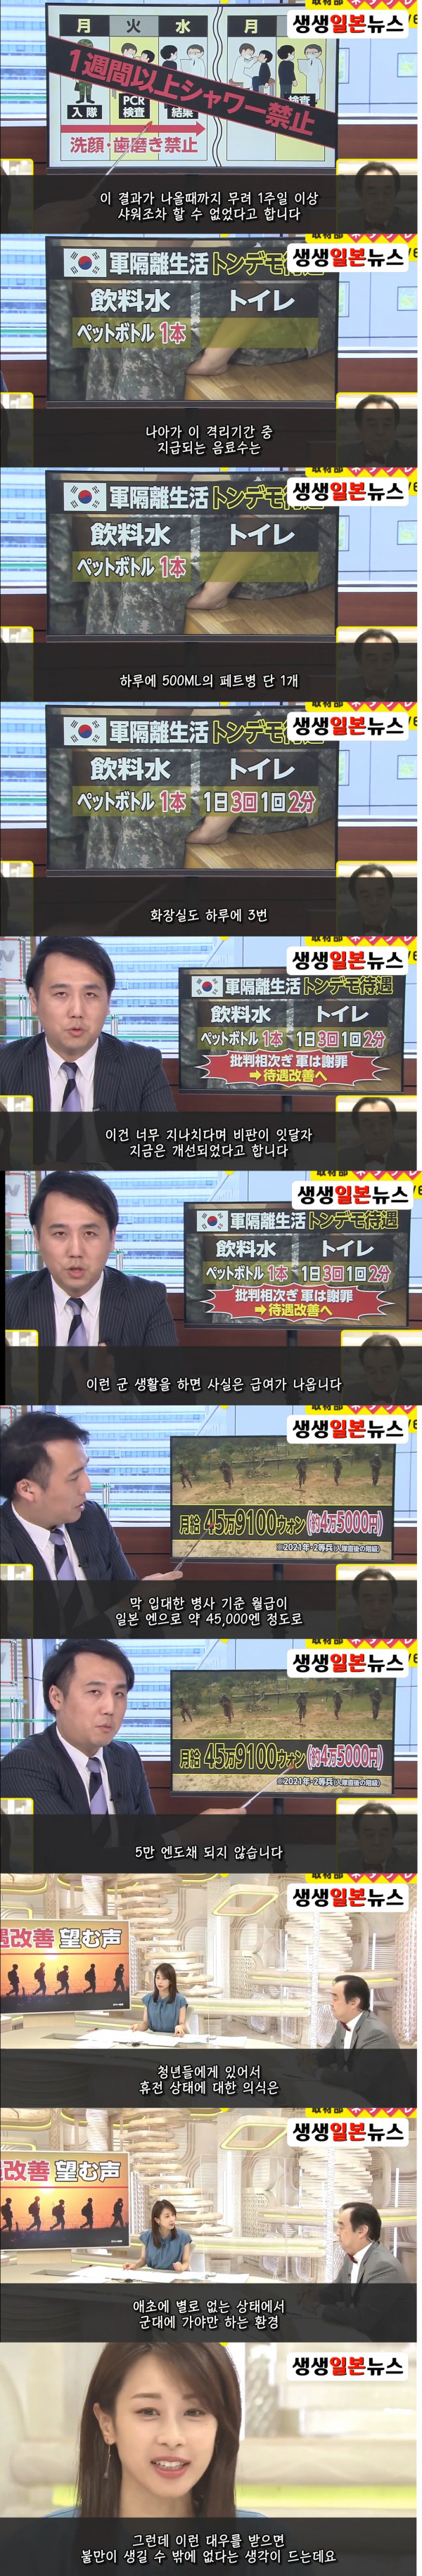 한국군 비판하는 일본 방송